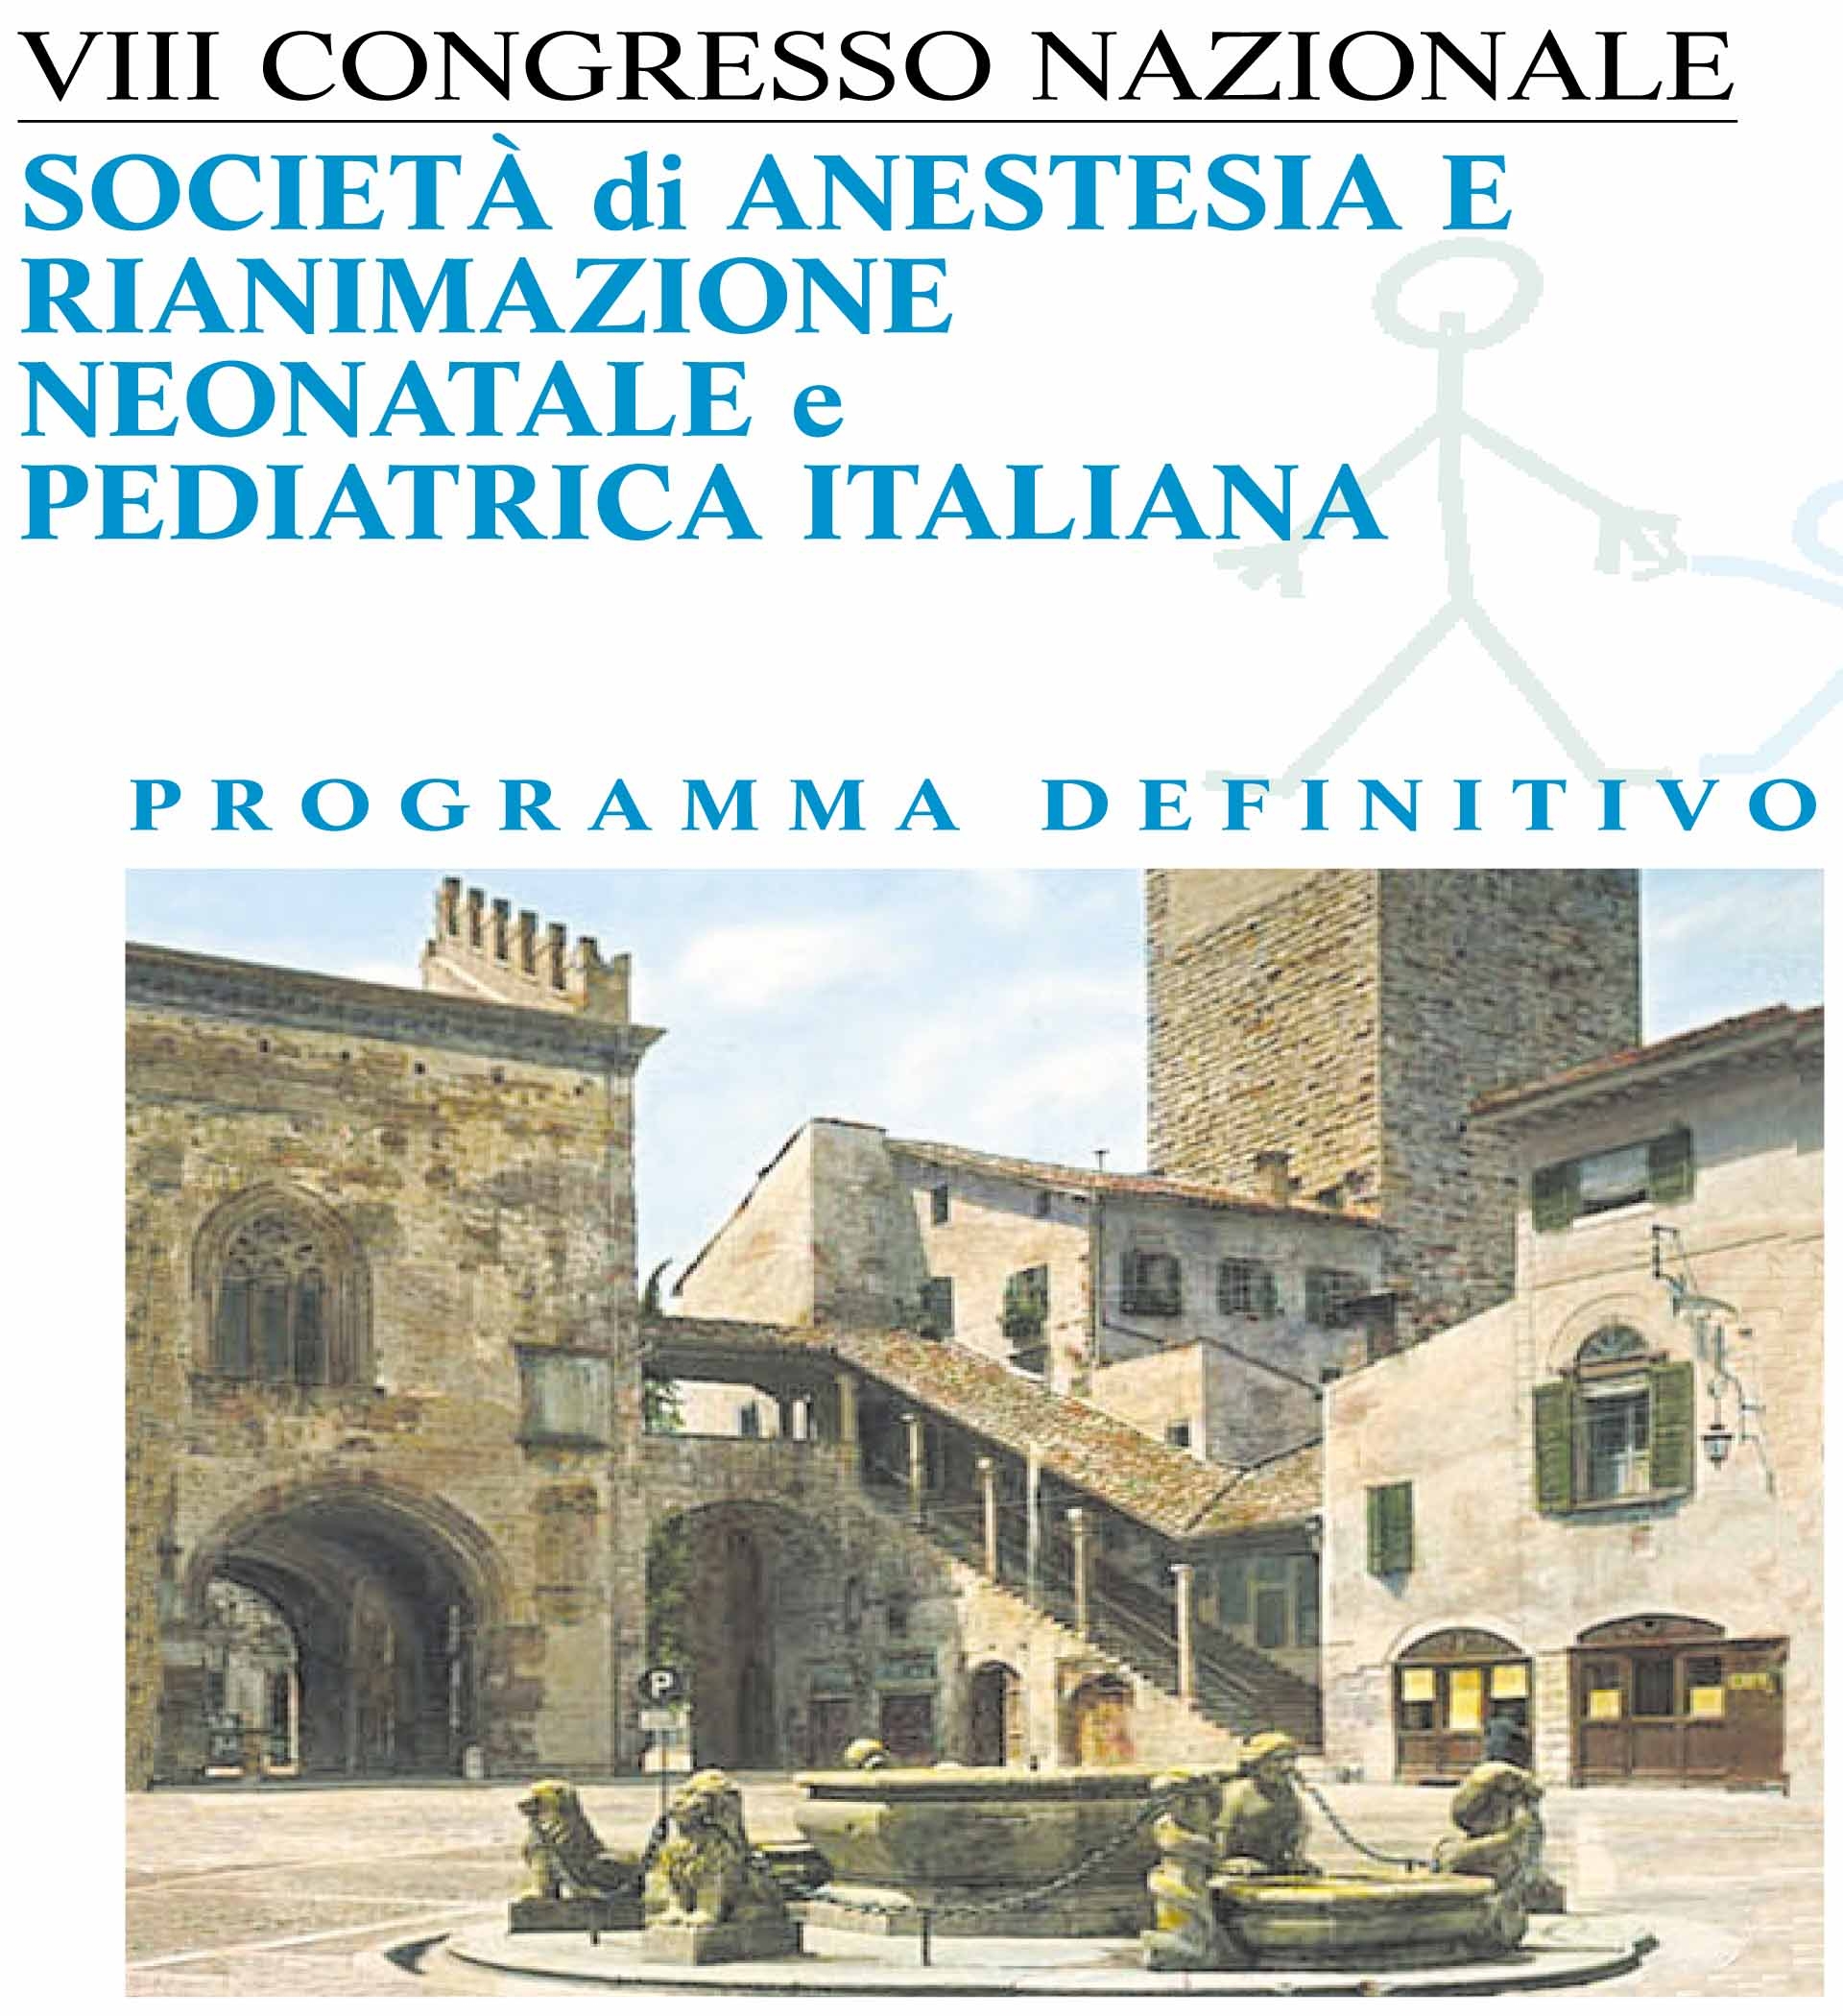 VIII Congresso nazionale Società di Anestesia e Rianimazione neonatale e pediatrica Italiana - Sarnepi